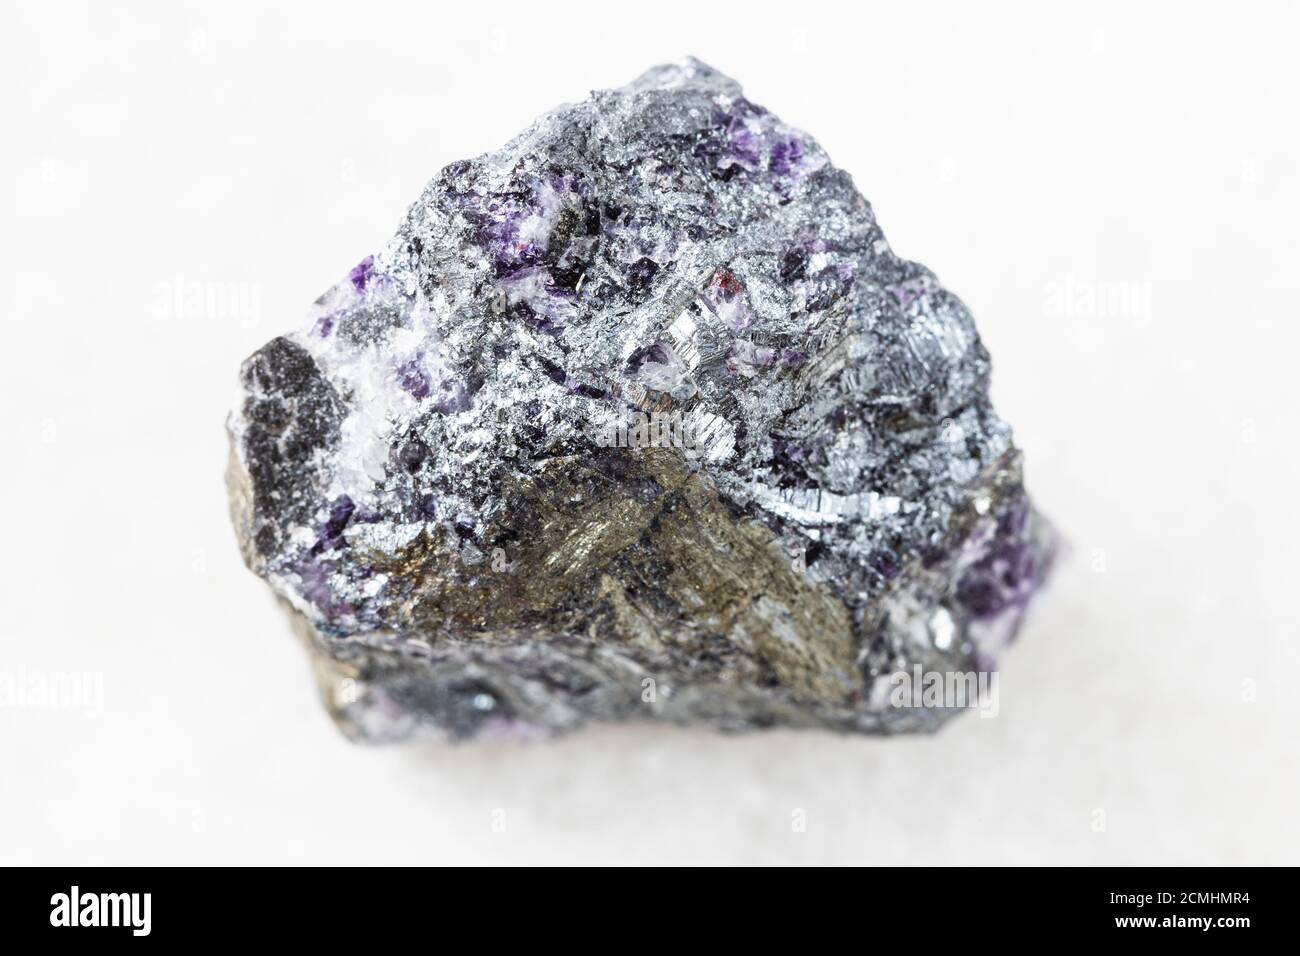 primo piano di un campione di minerale naturale proveniente dalla raccolta geologica - Stibnite non lucidata (antimonite) su sfondo di marmo bianco dall'Ucraina Foto Stock